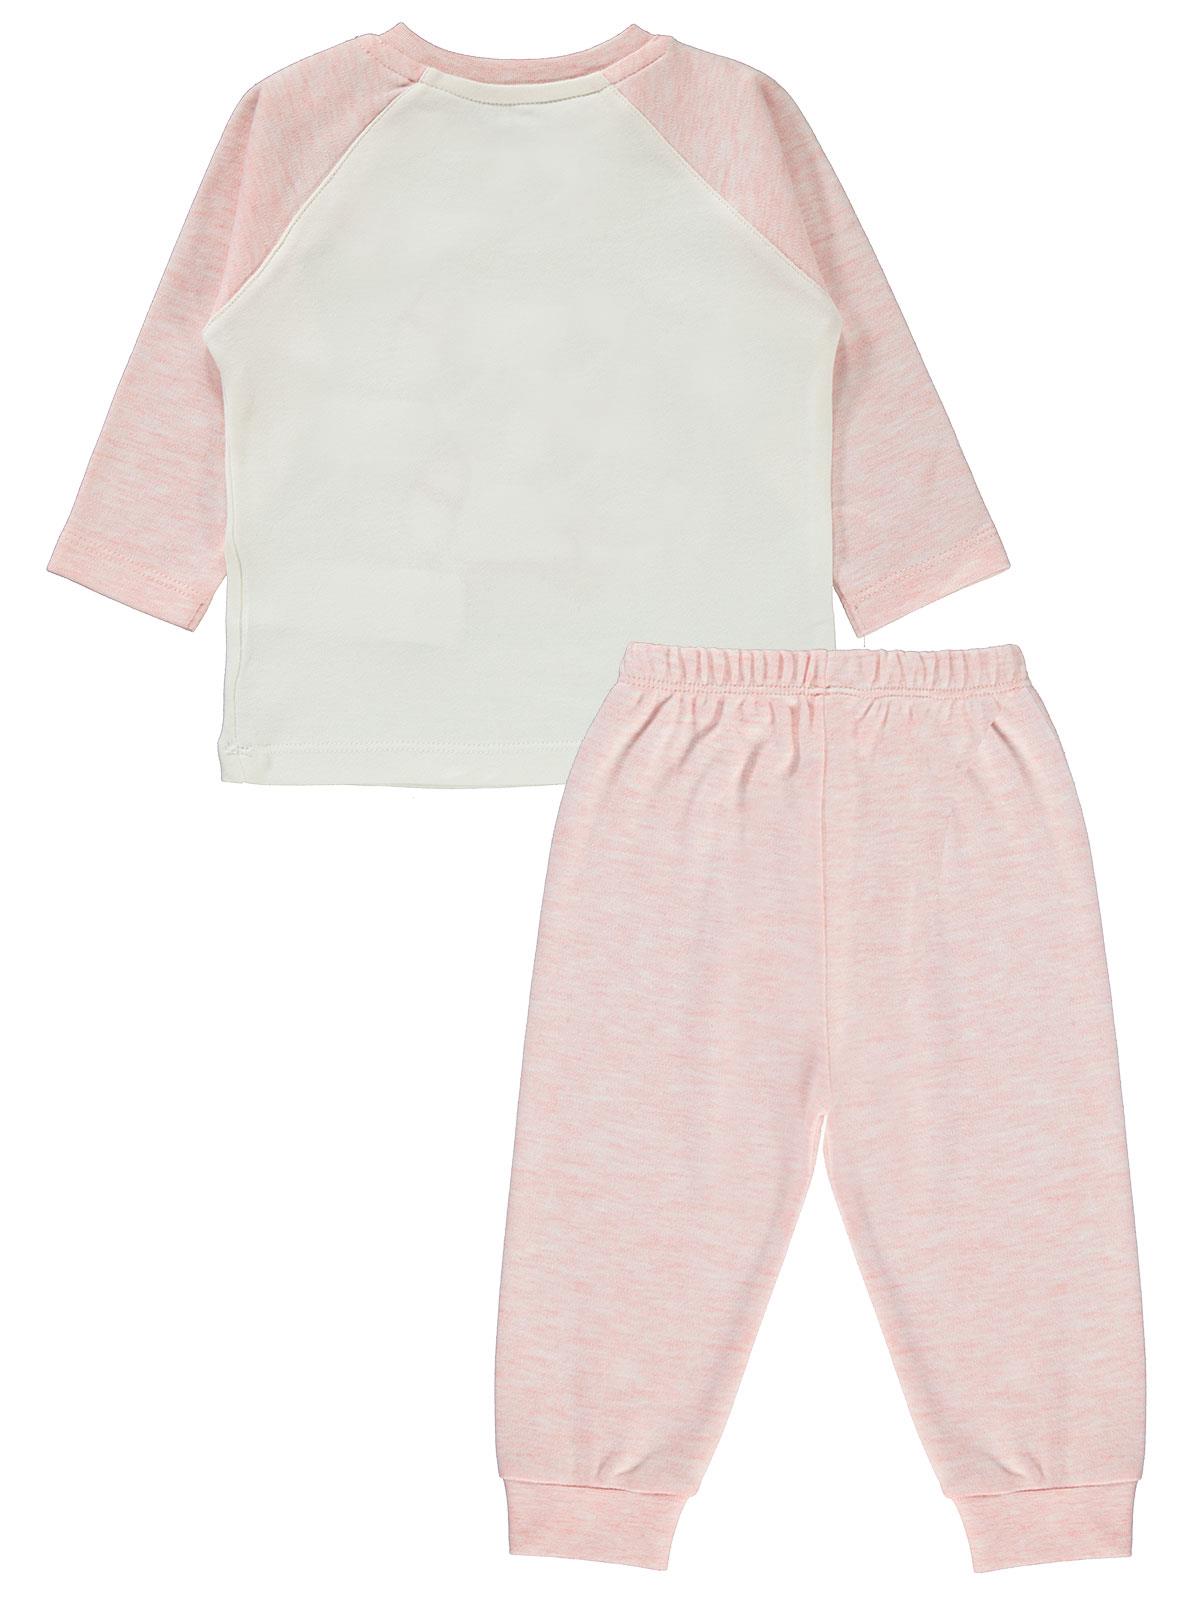 Kujju baby pige kæmmet bomulds pyjamas sæt 6-18 måneder lyserød farve 100%  bomuld baby krave langærmet